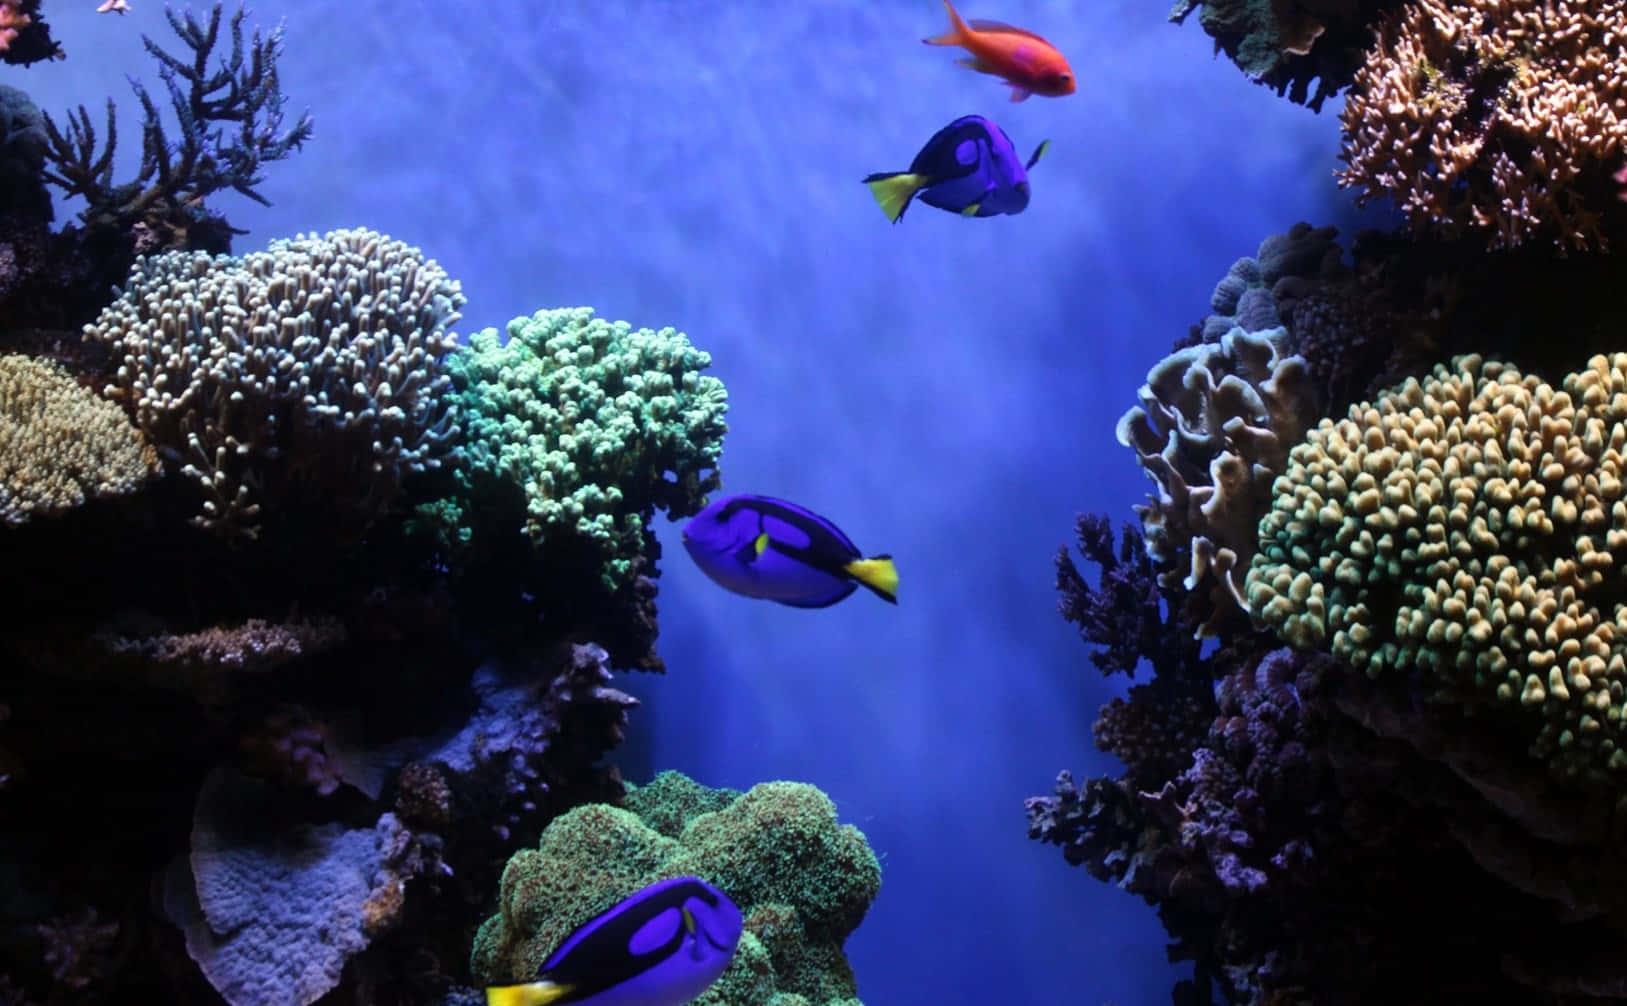 Blue Tang Fish Coral Reef Scene Wallpaper